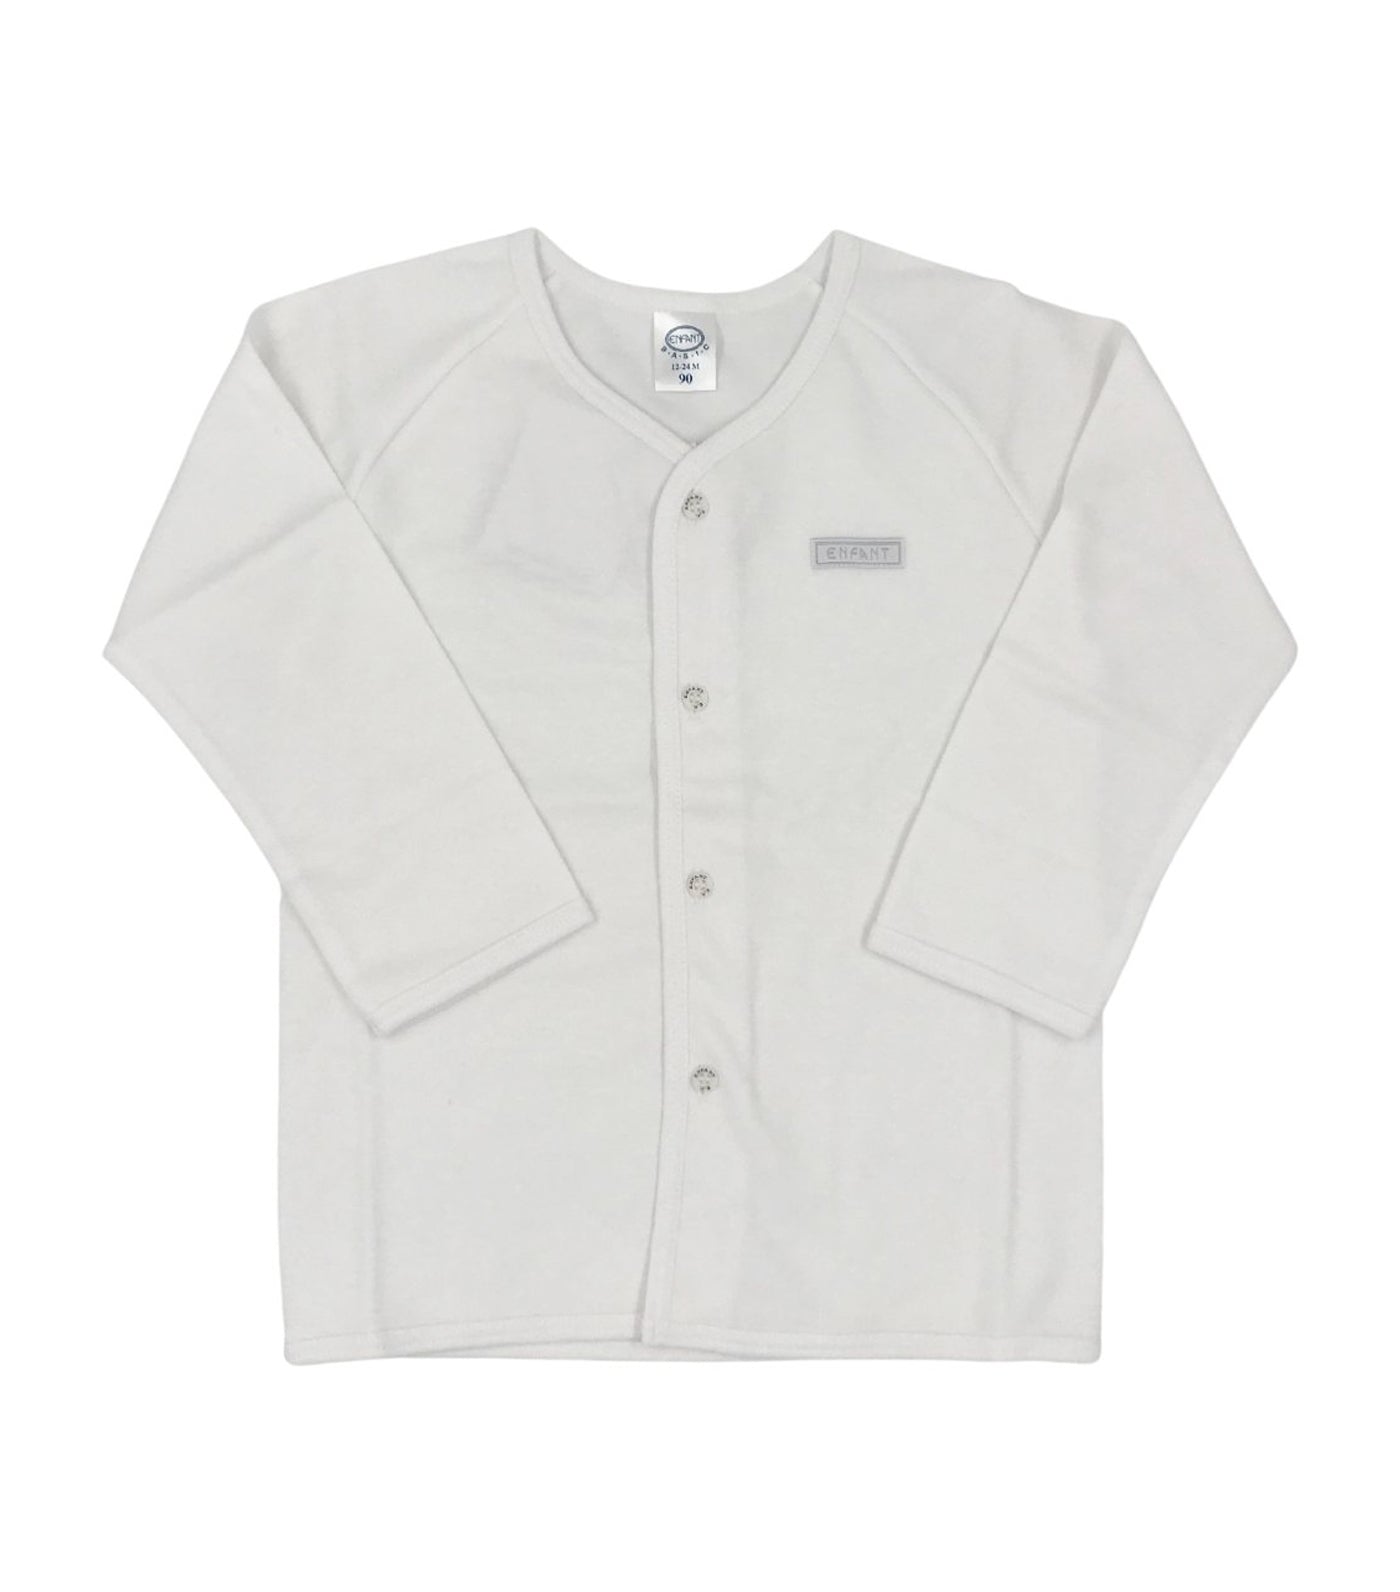 Unisex Long-Sleeve Shirt